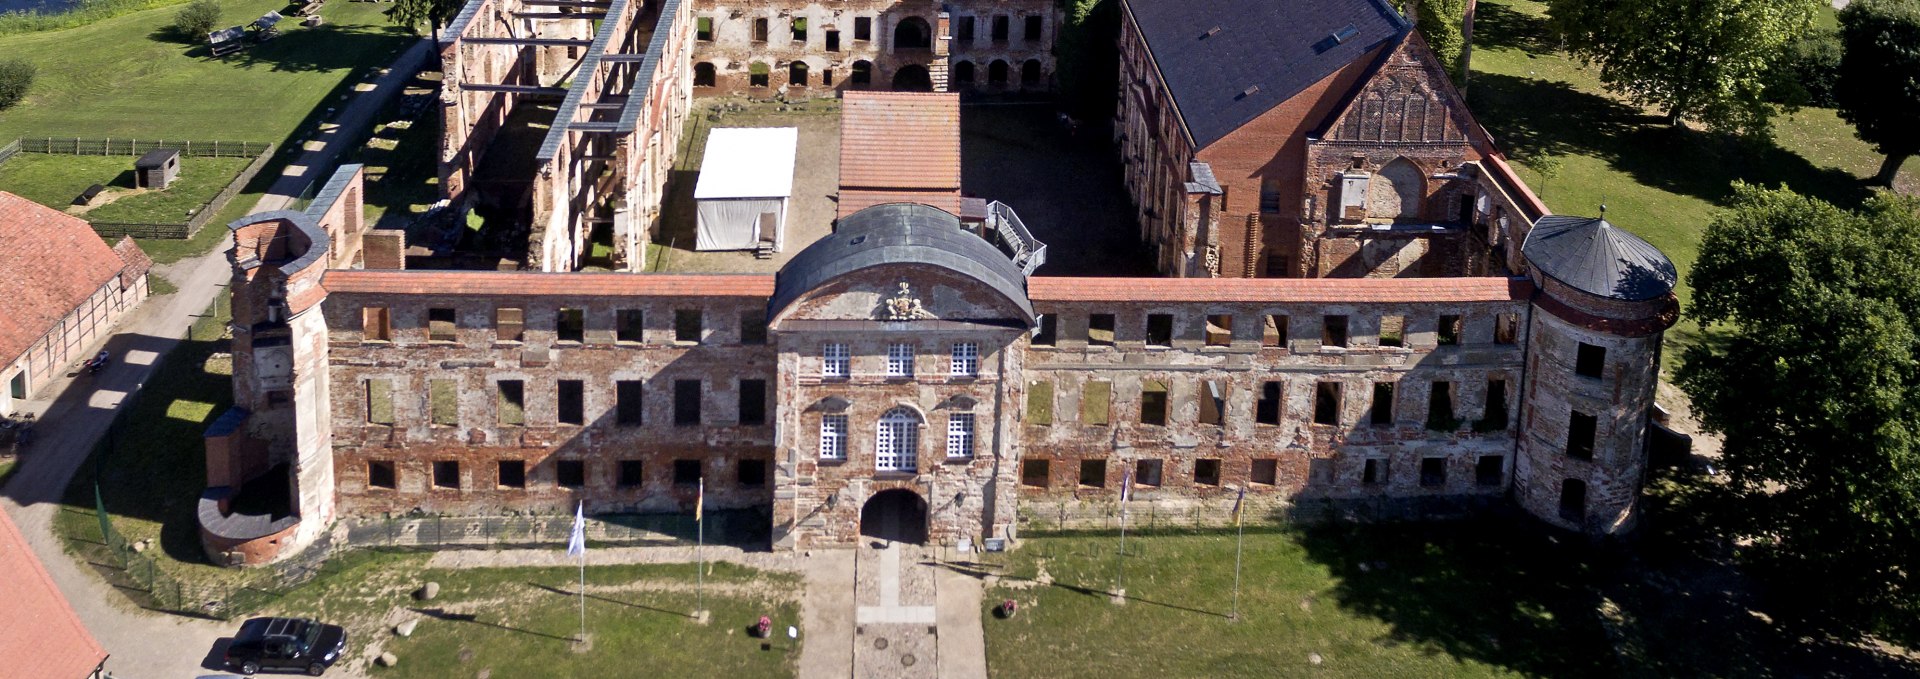 Kloster- und Schlossanlage Dargun, © B. Brinkmann